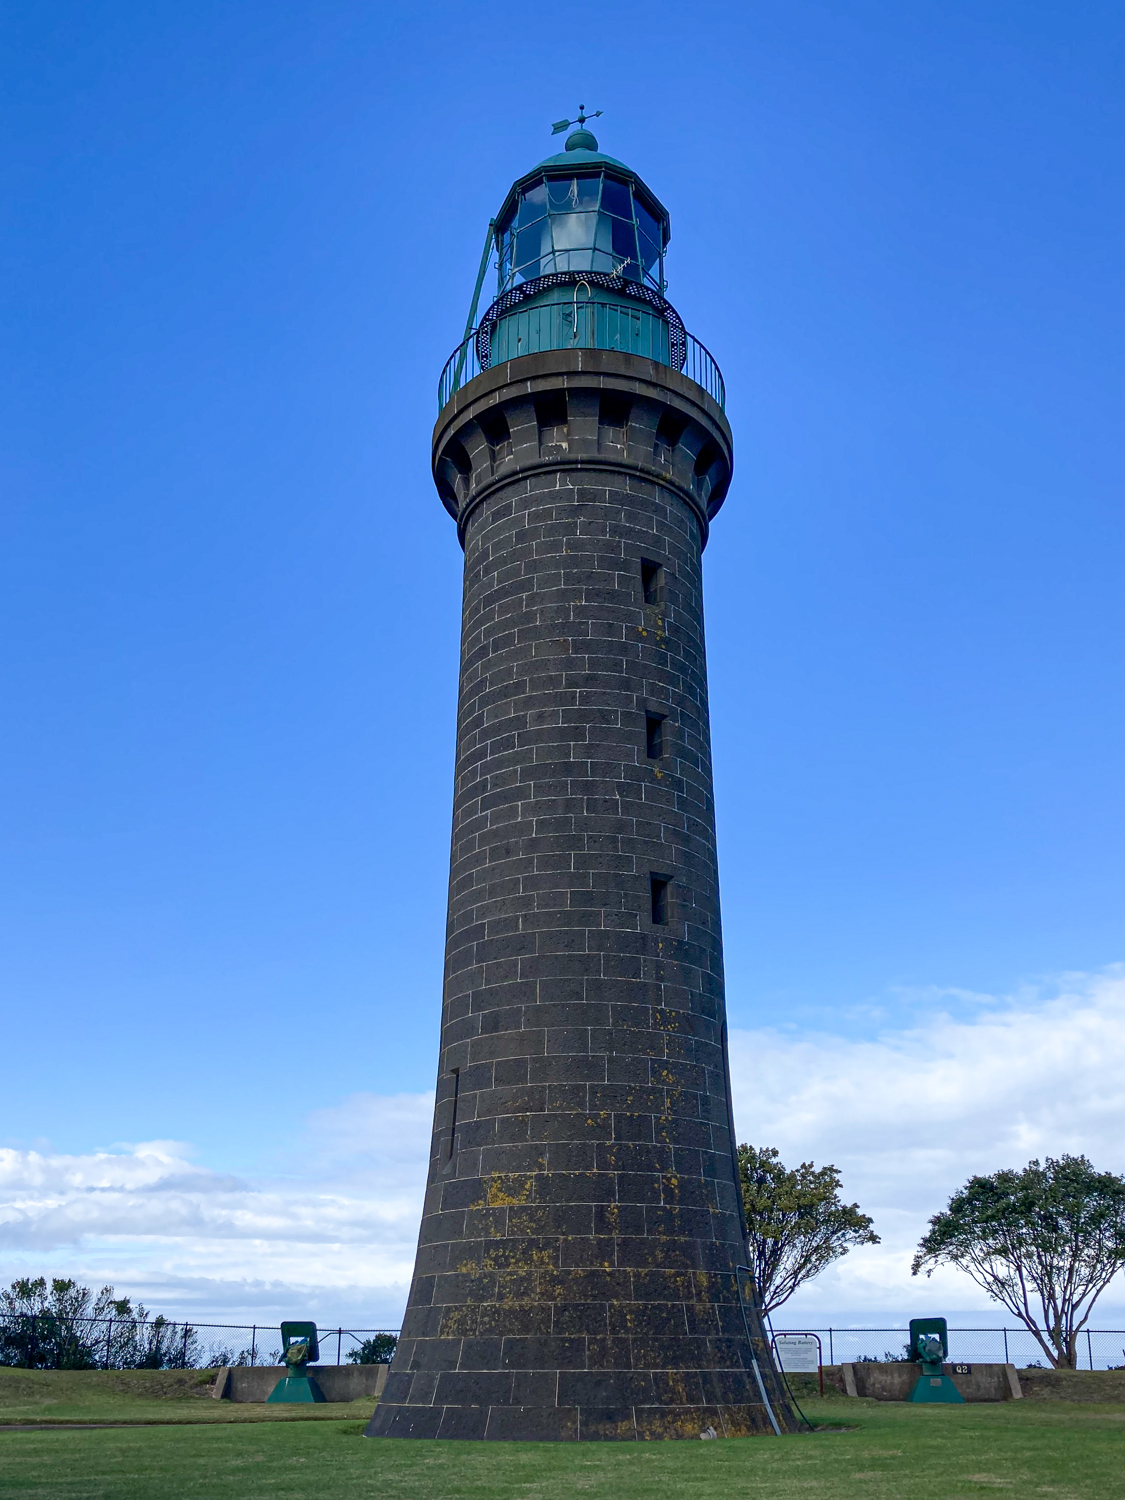 A black lighthouse against a blue sky